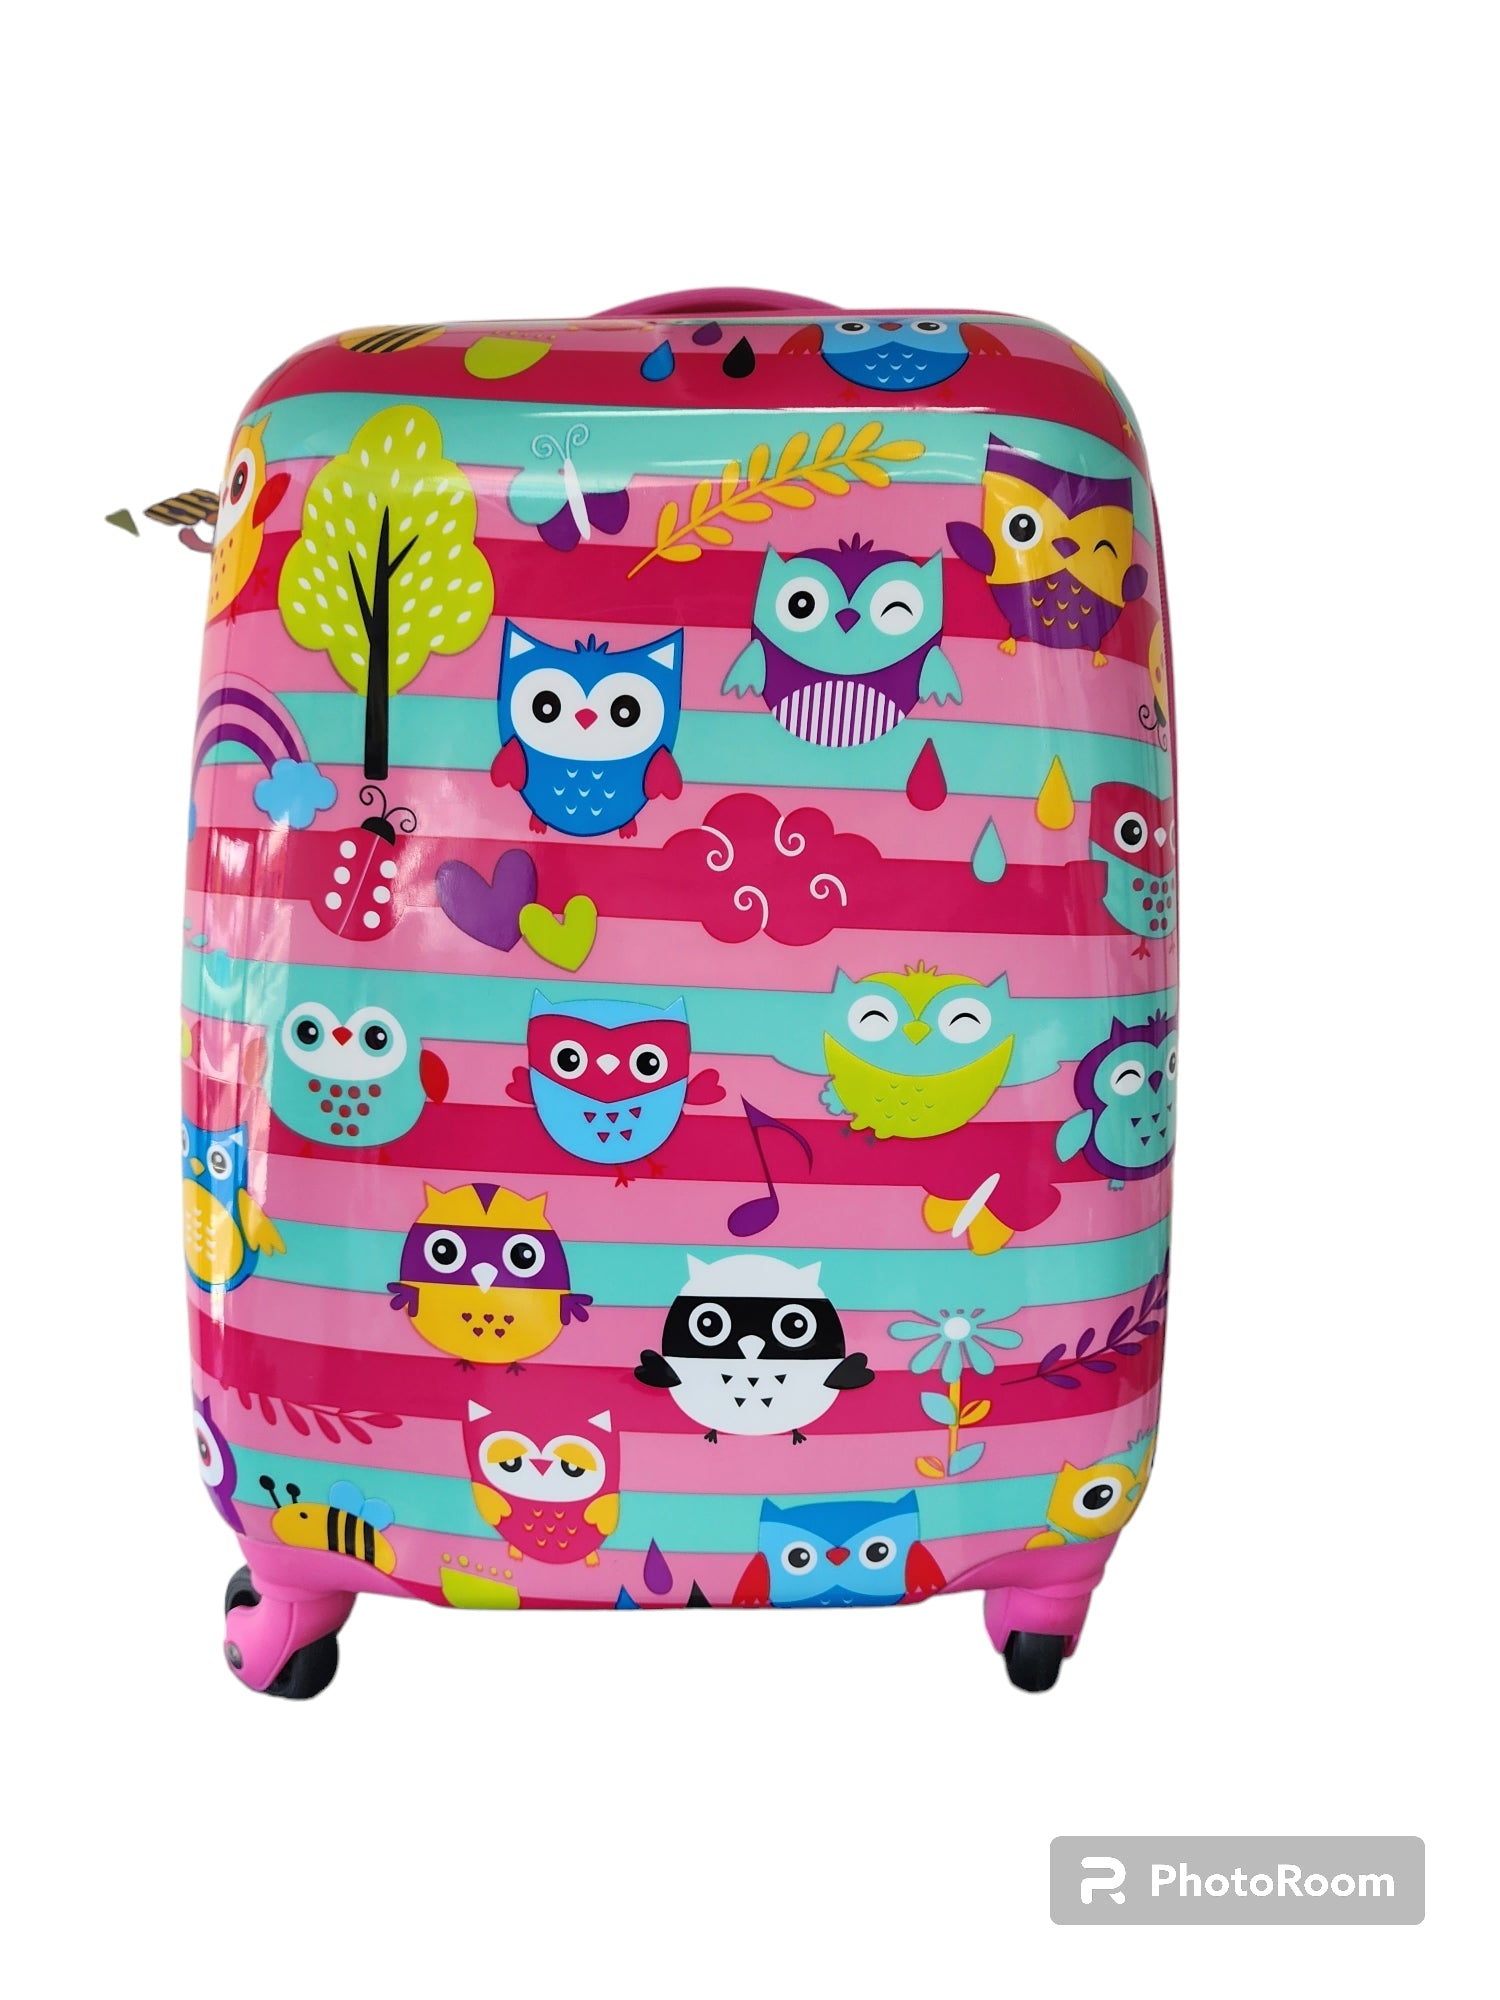 Kidz Bagz - 48cm Owl spinner suitcase - Pink